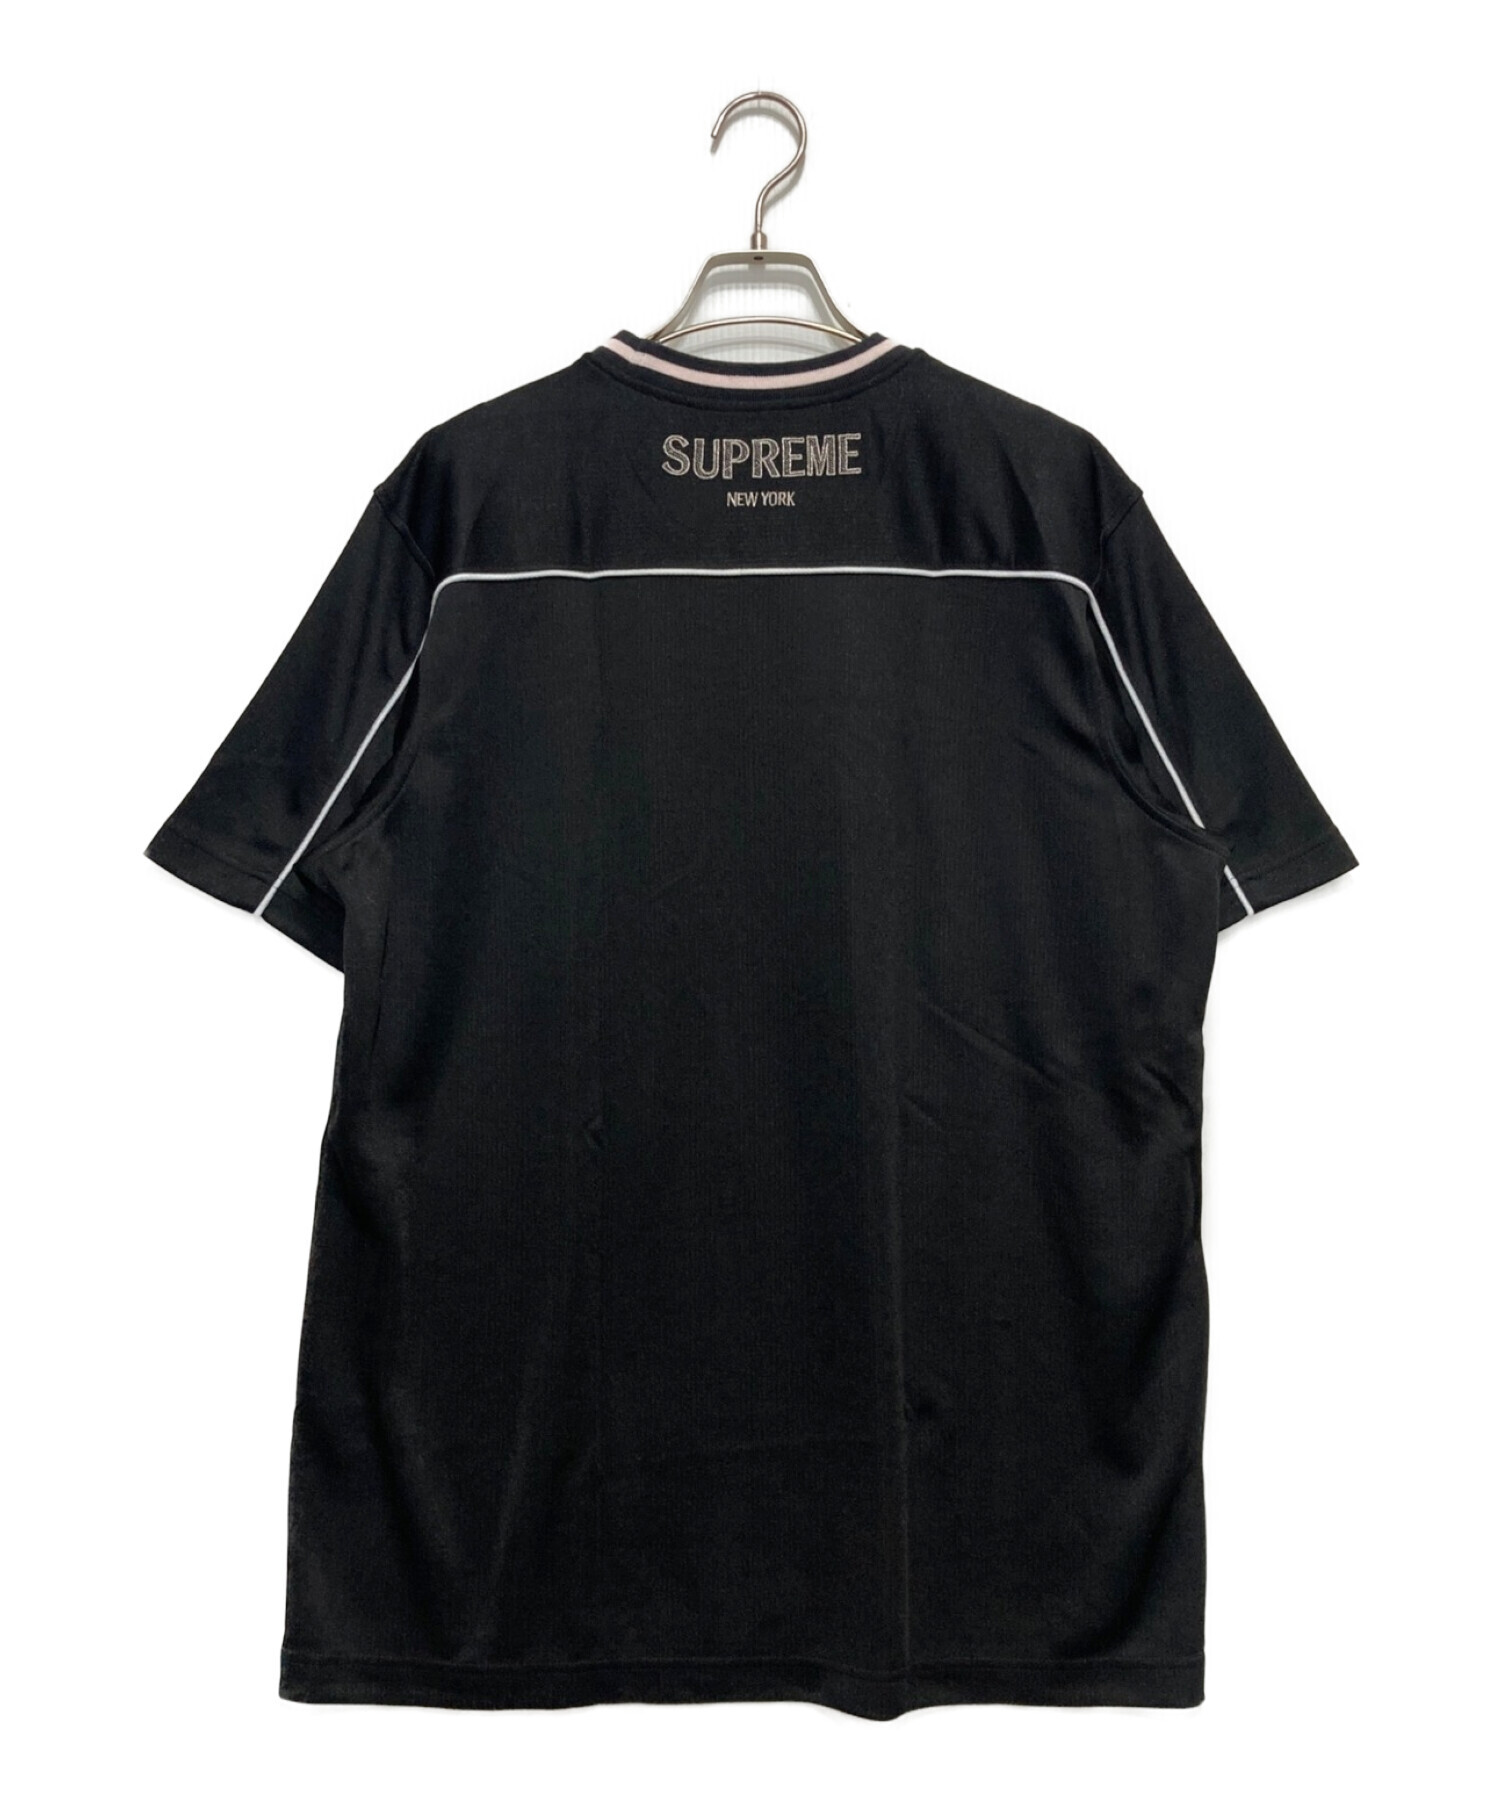 SUPREME (シュプリーム) ロゴ刺繍Tシャツ ブラック サイズ:L